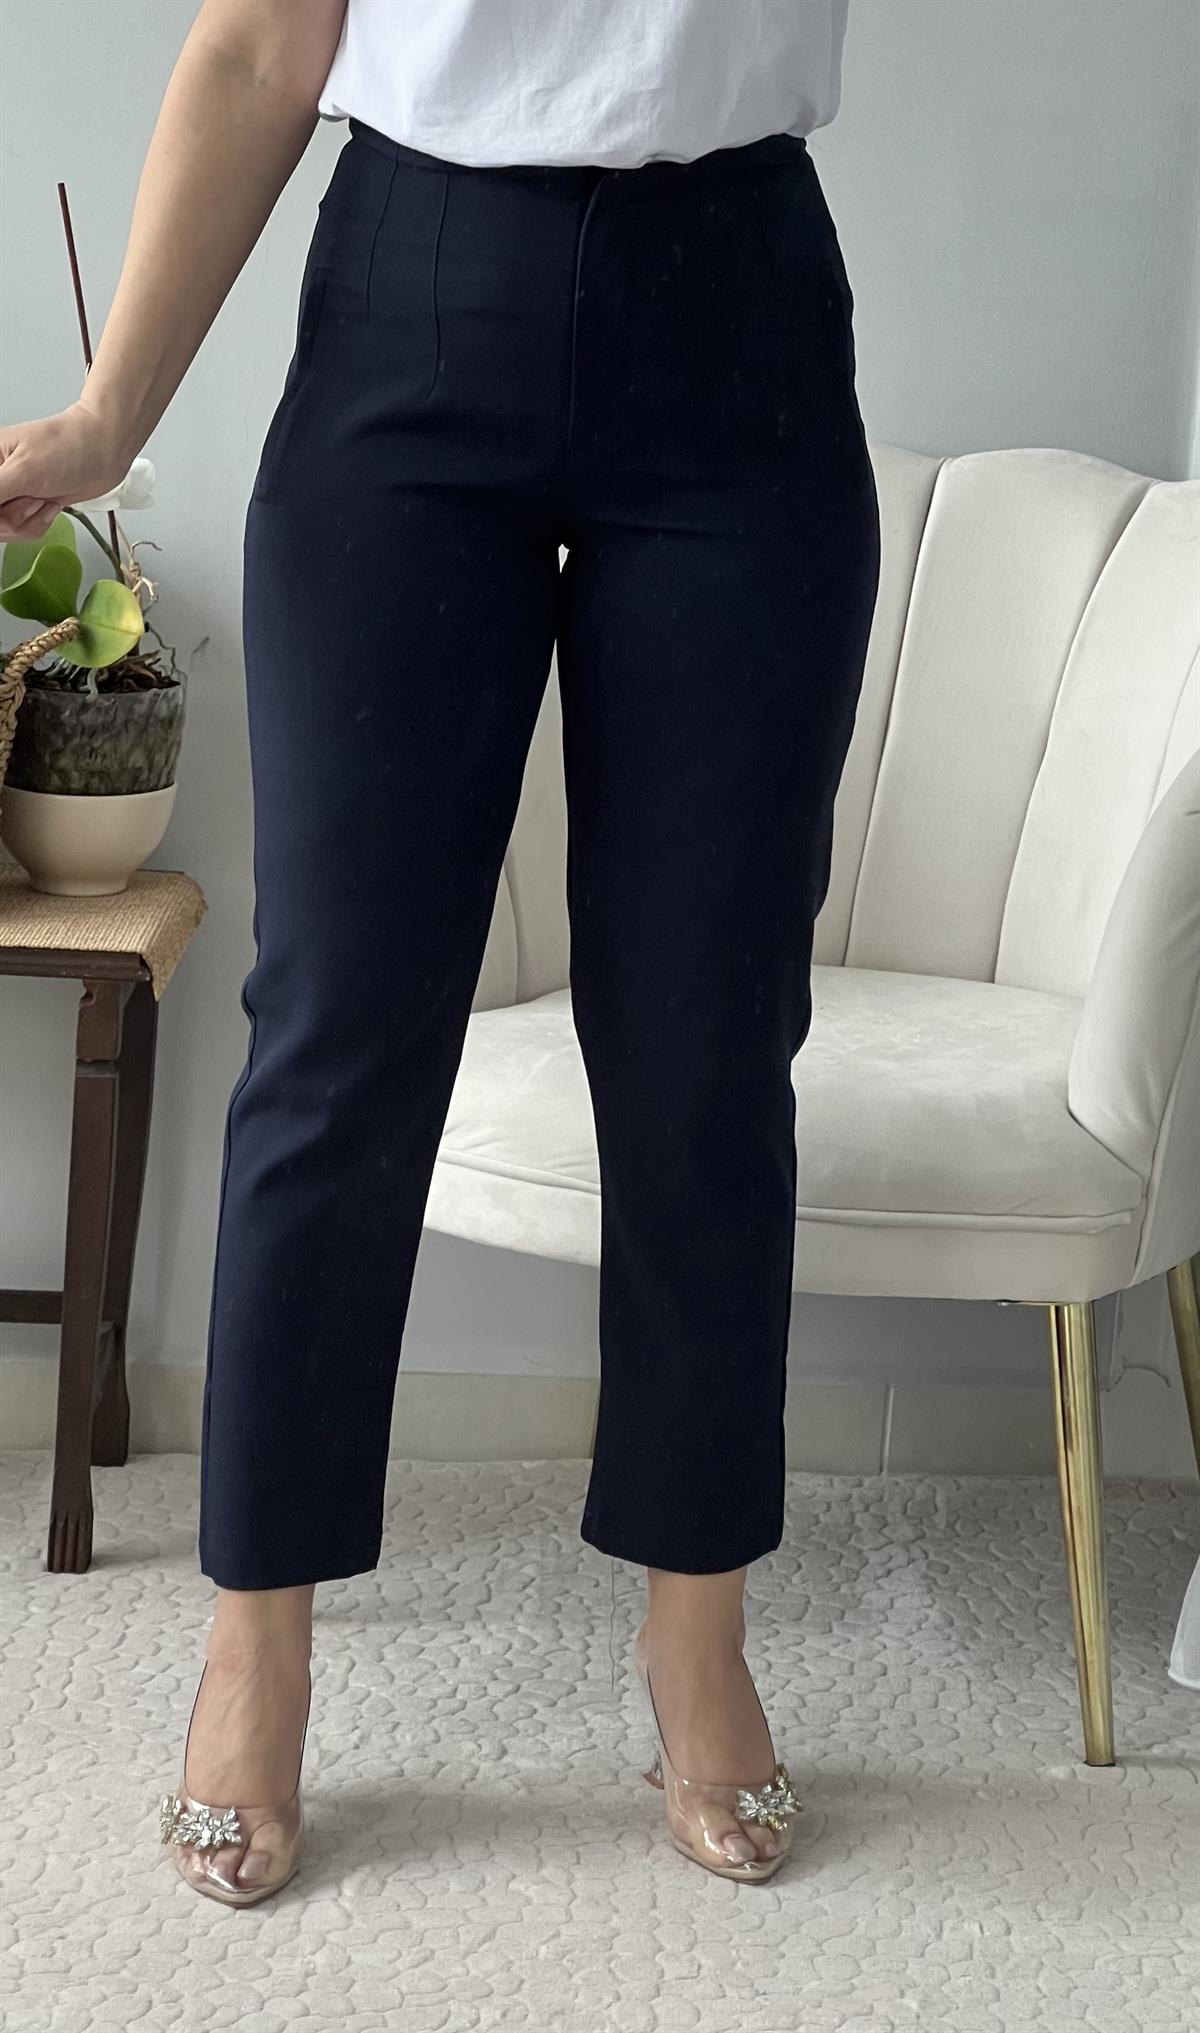 Lacivert Yüksek Bel Kumaş Pantolon Pantolon Ürünü Sadece 199,00